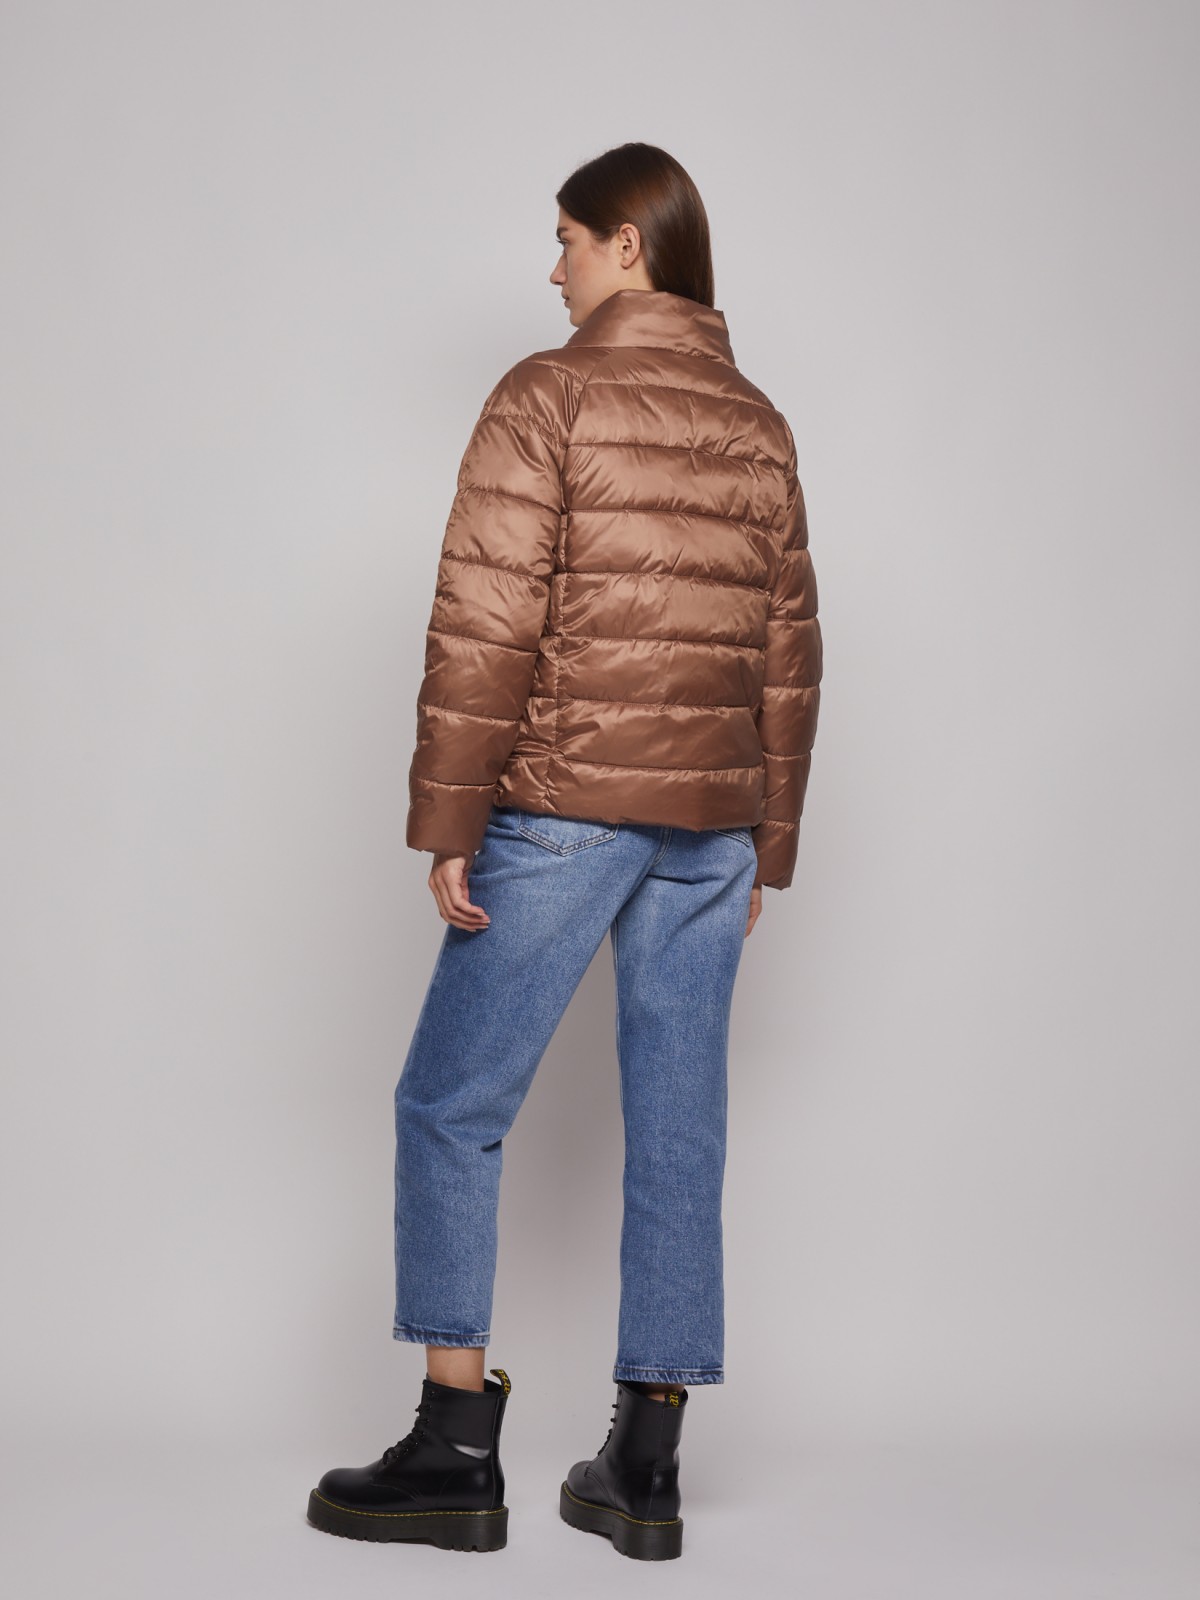 Лёгкая куртка с воротником-стойкой zolla 022335102204, цвет коричневый, размер XS - фото 5